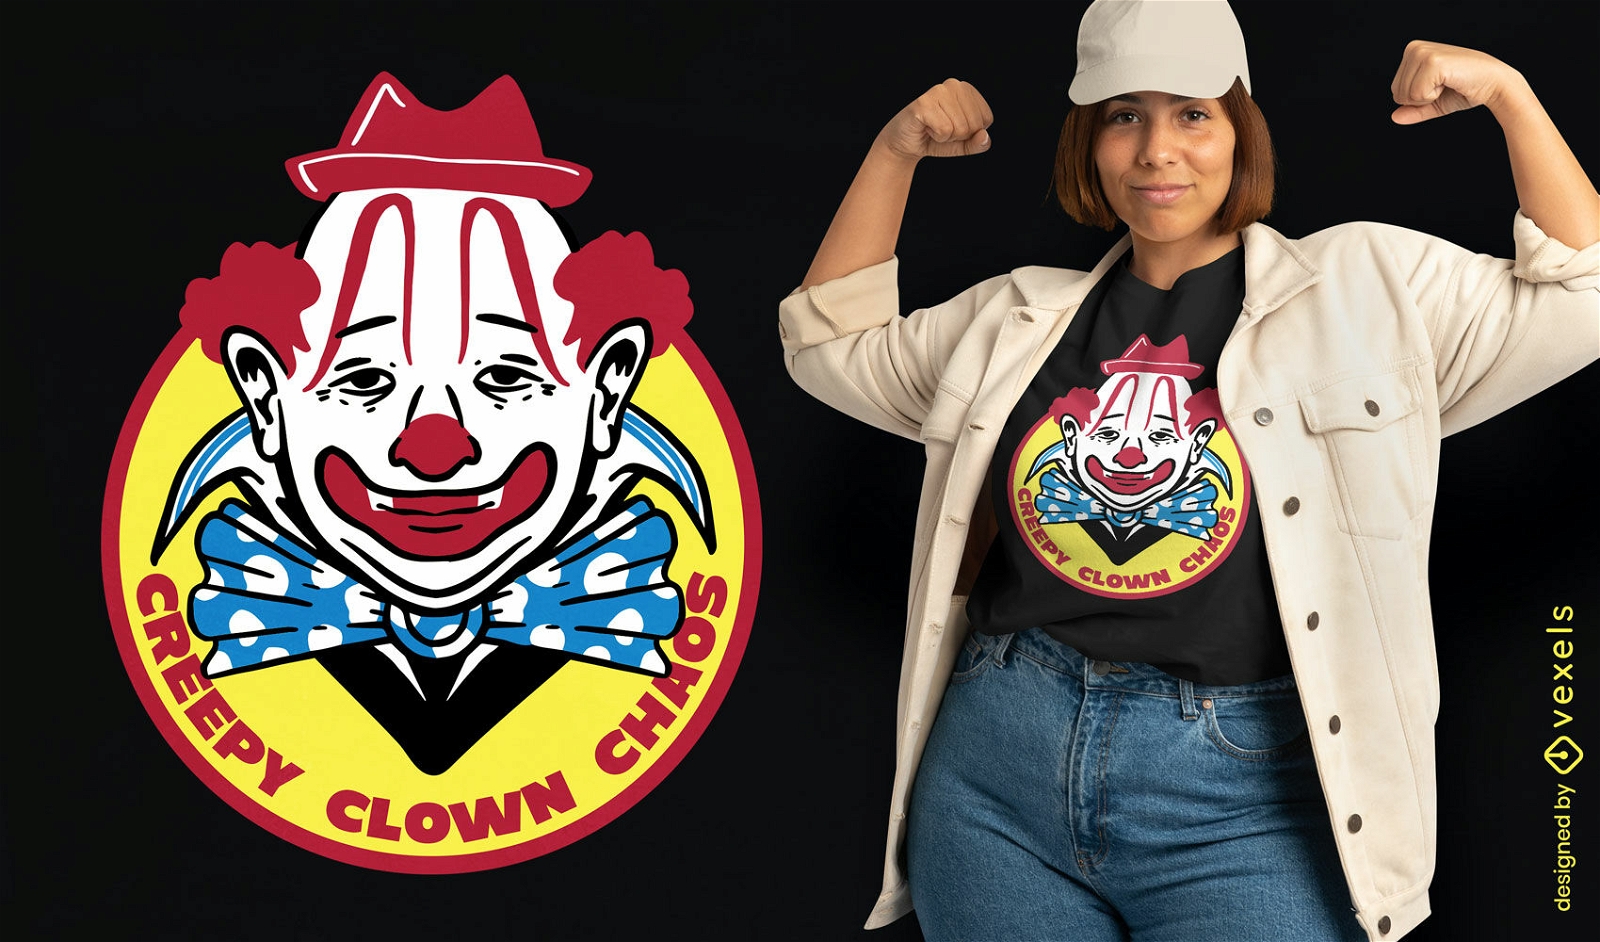 Creepy clown chaos t-shirt design